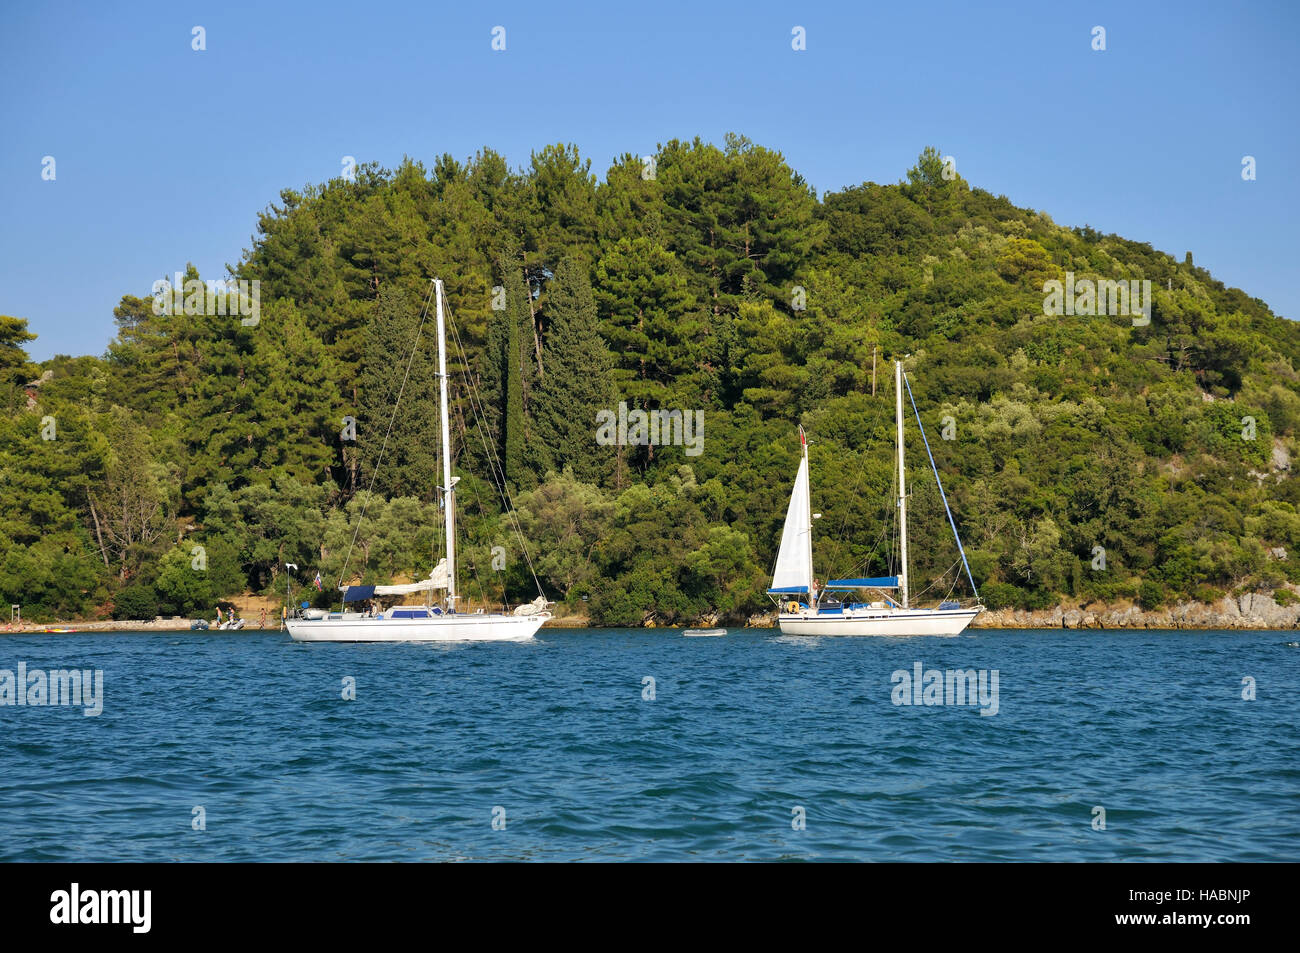 Sailing yachts at Nydri bay, Lefkada island, Greece Stock Photo